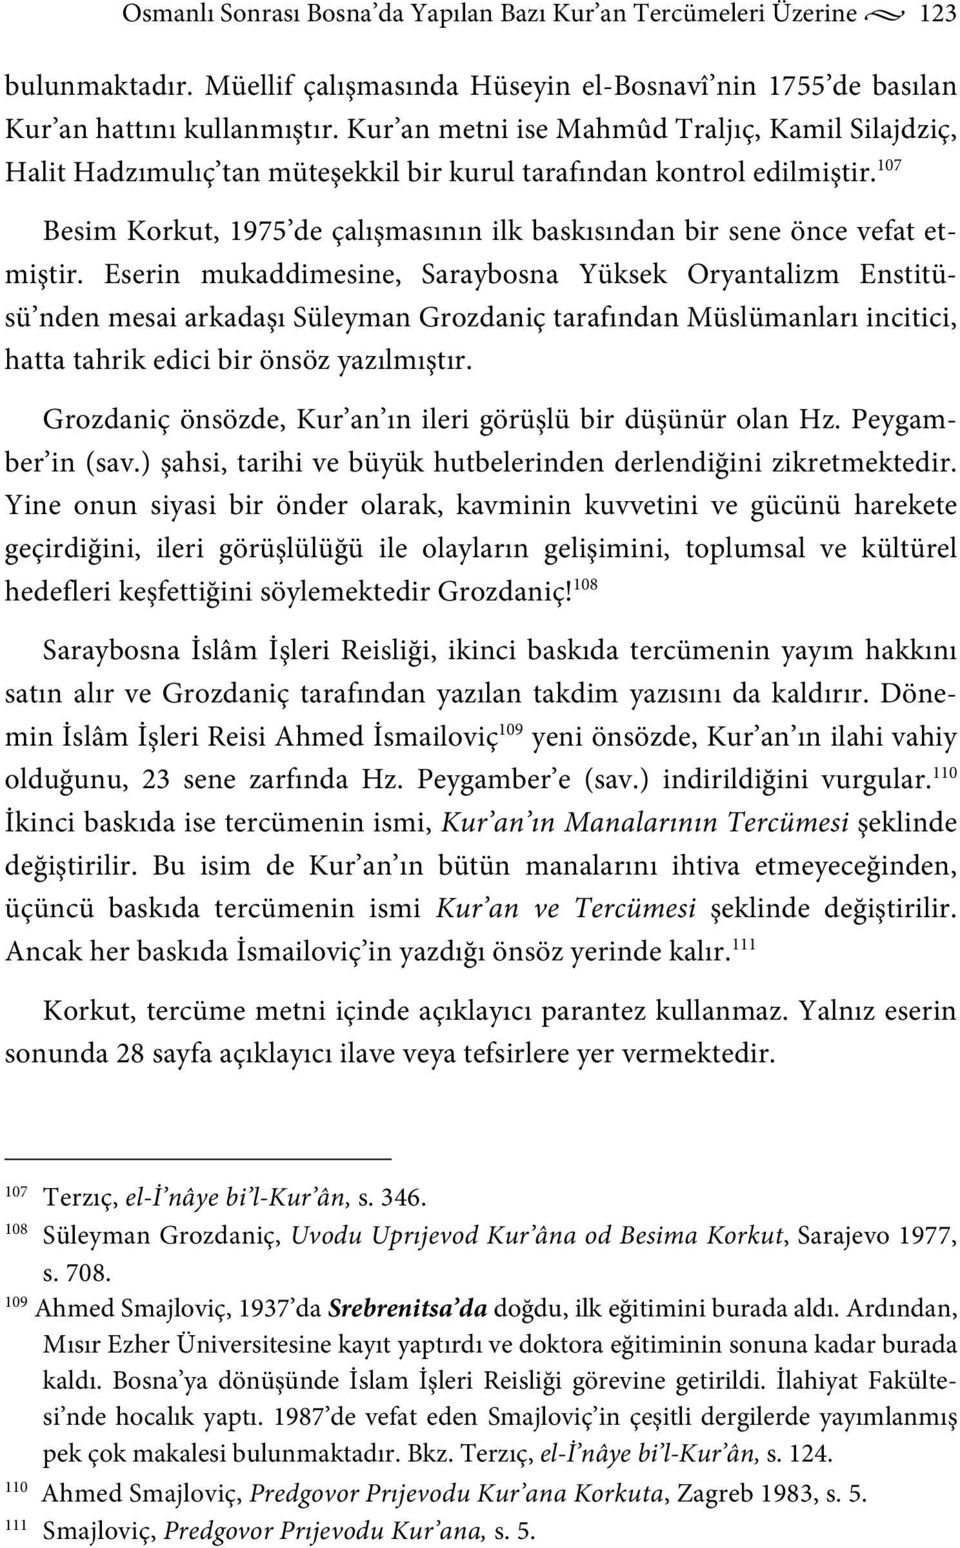 107 Besim Korkut, 1975 de çalışmasının ilk baskısından bir sene önce vefat etmiştir.